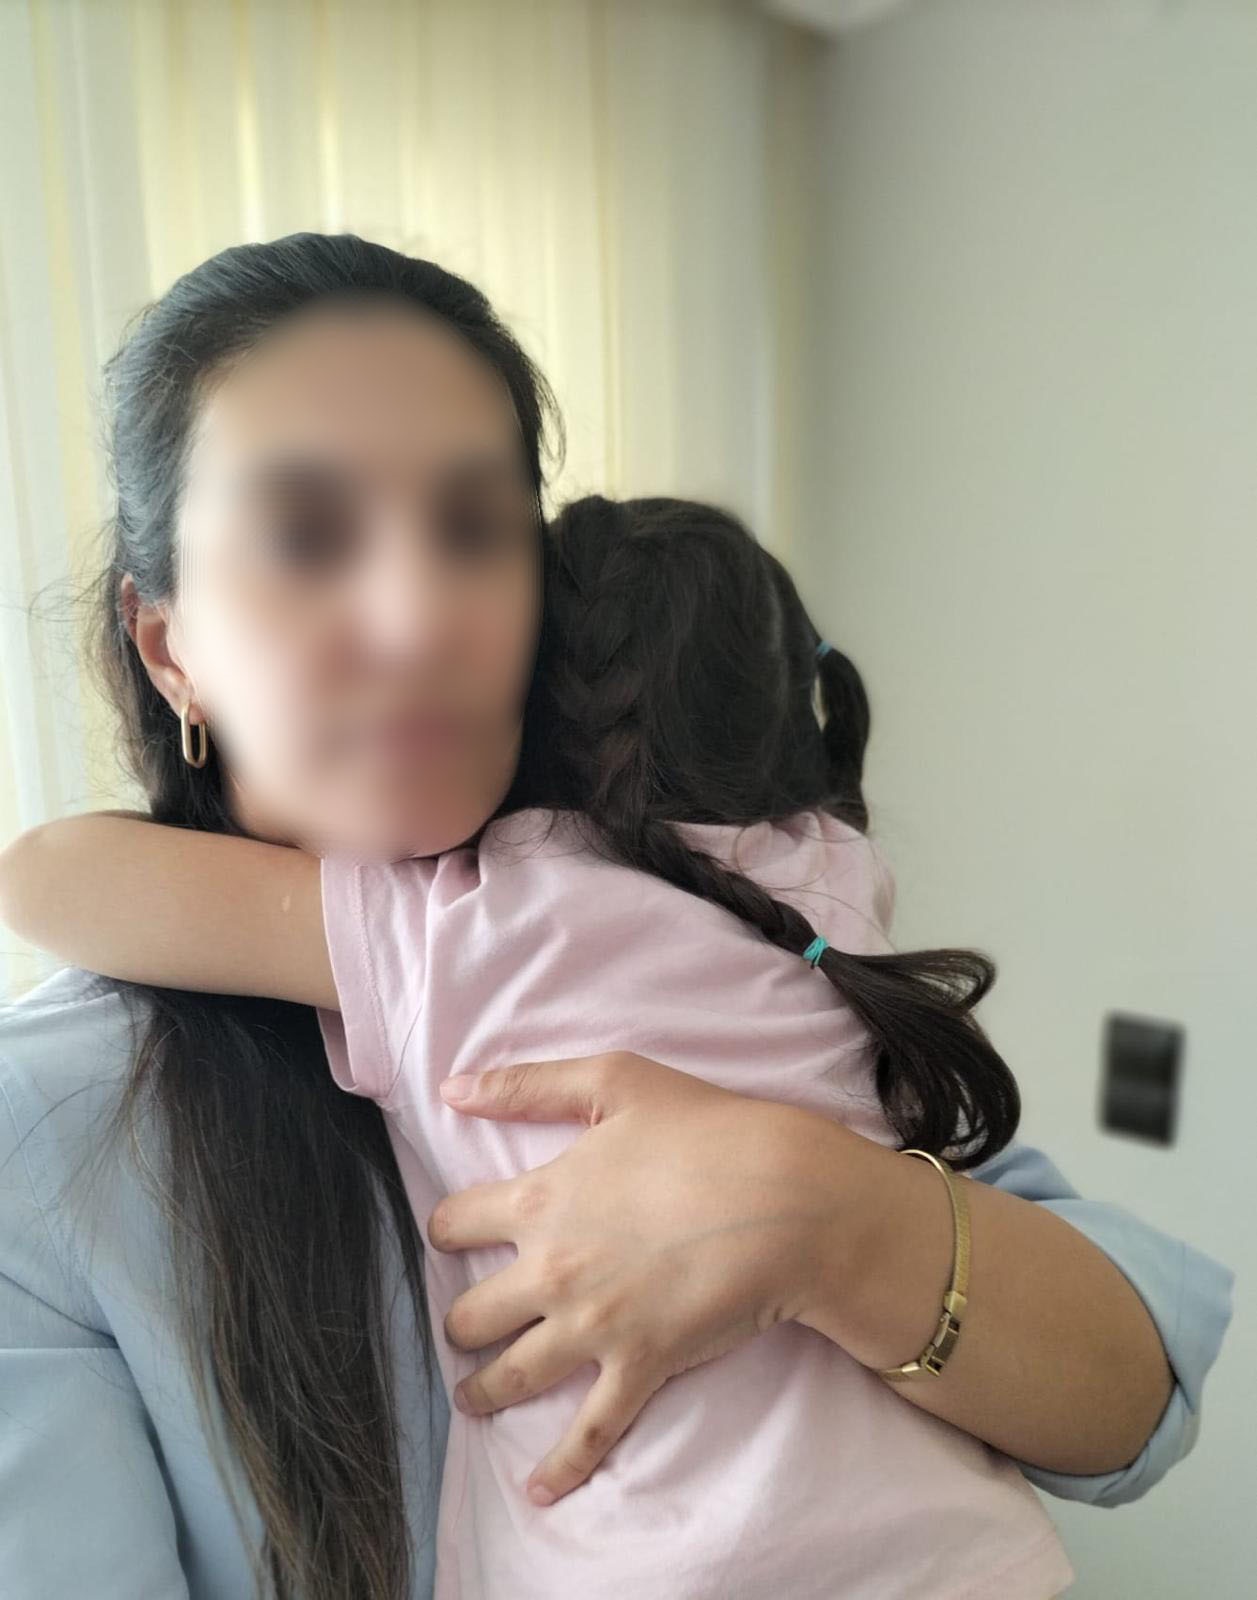 3 yaşındaki kız çocuğuna babanın cinsel istismarı iddias.